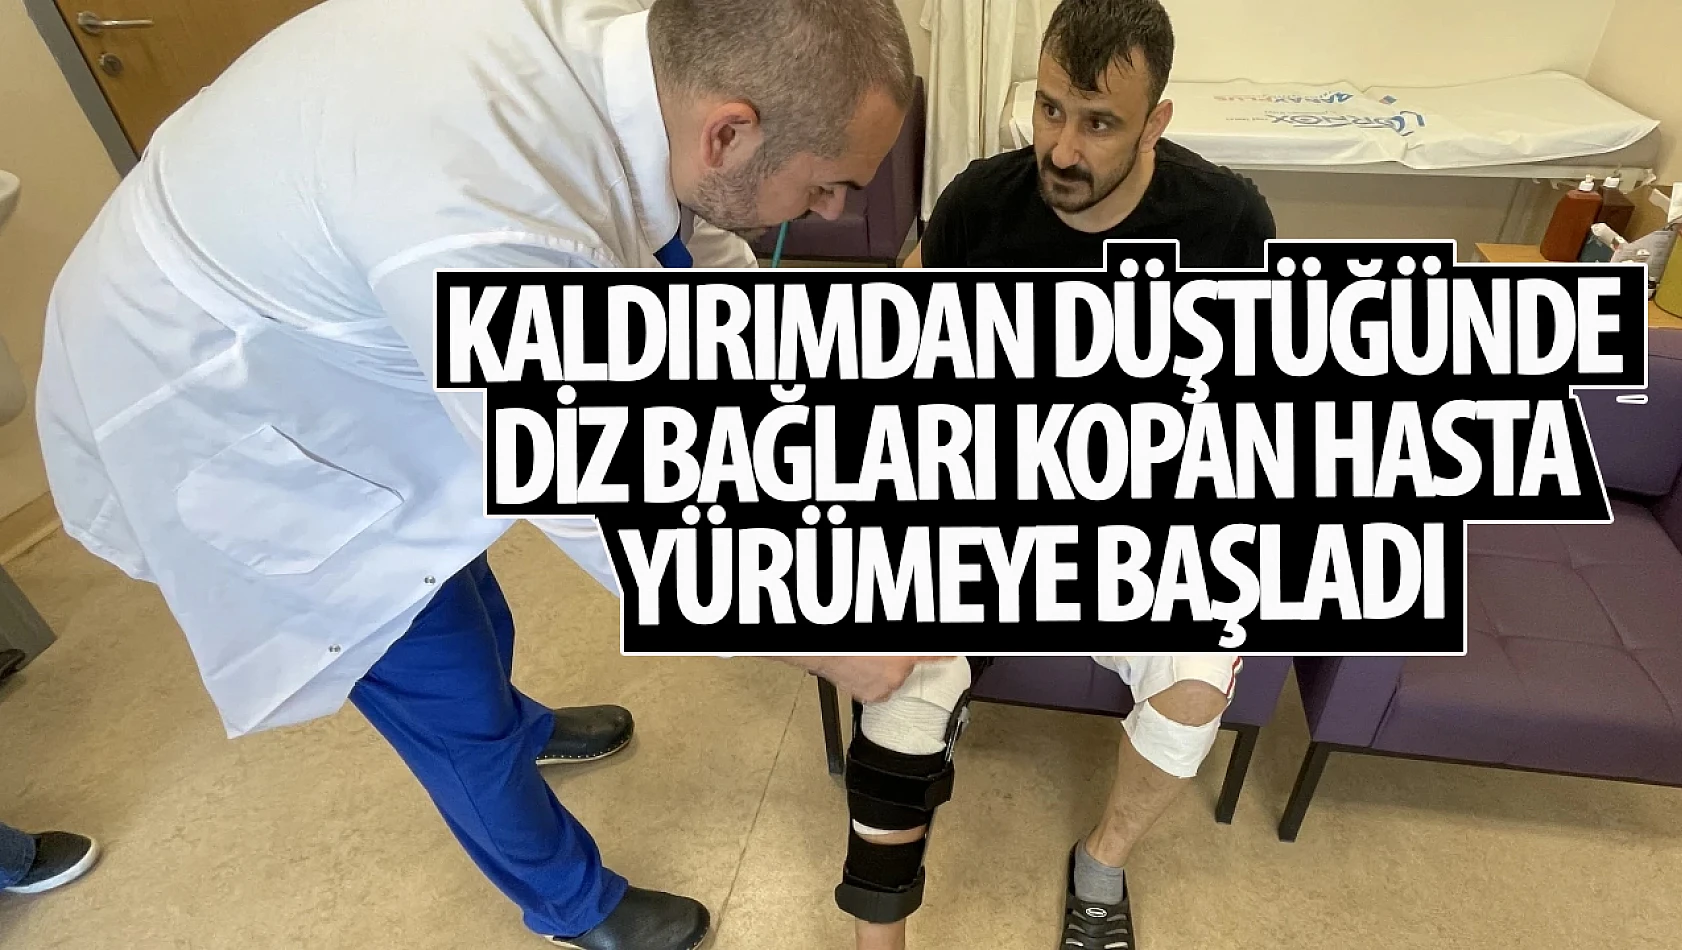 Konya'da kaldırımdan düşünce diz bağları kopan hasta, tendon nakliyle ayağa kalktı!